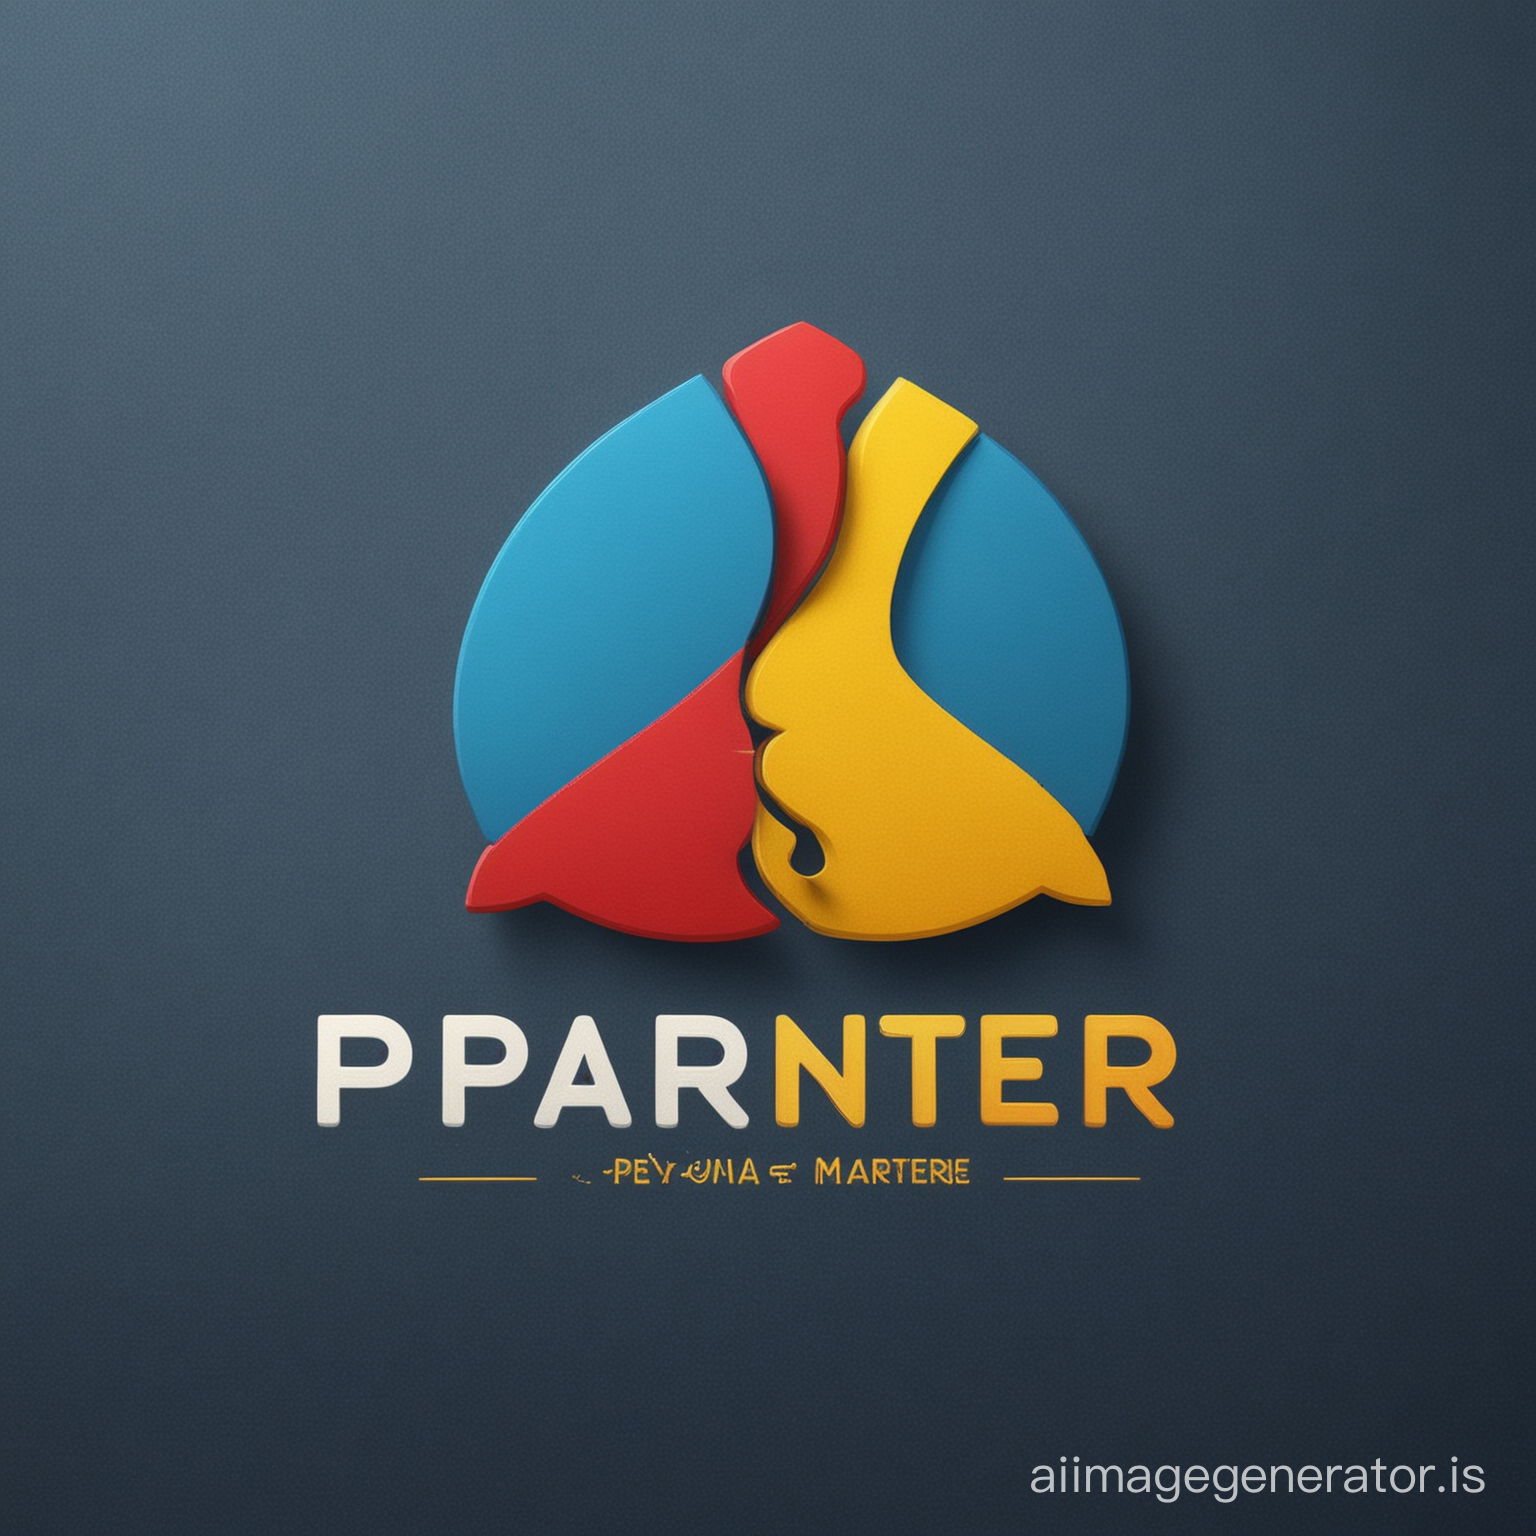 создать логотип компании Partner and Partners использовать контрастные цвета синий фон надпись красная и Жолтая: Partner and Partners